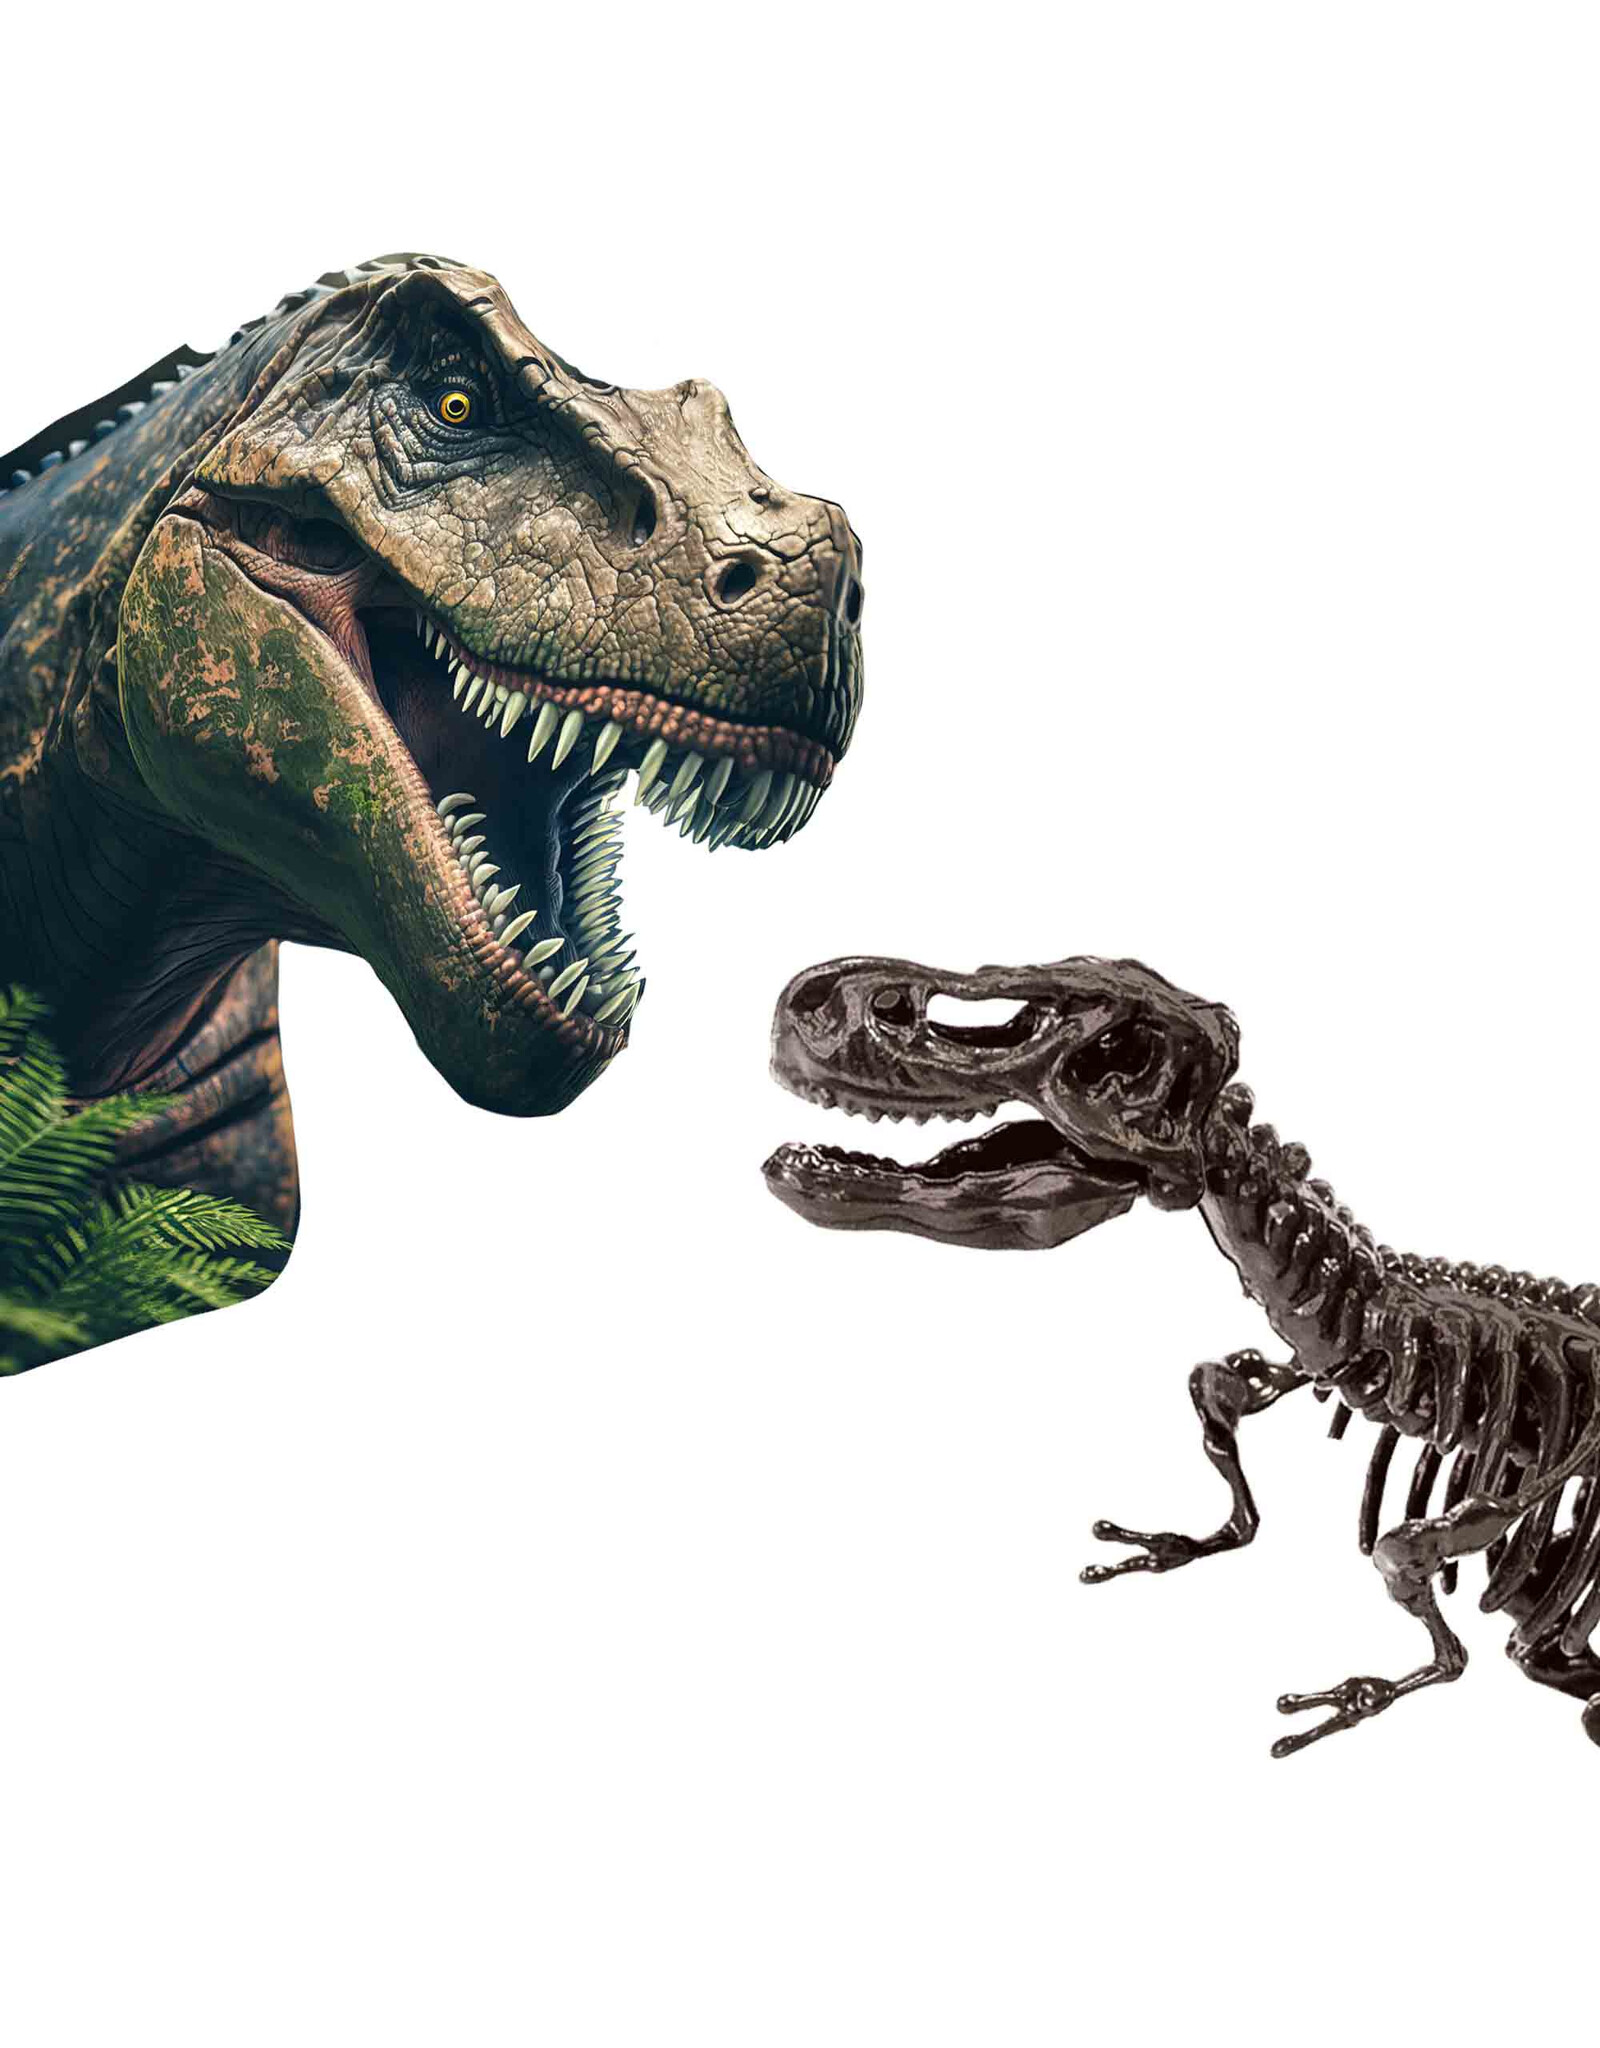 SES Creative SES - Explore - Dino en skelet opgraven 2 in 1 - T-rex